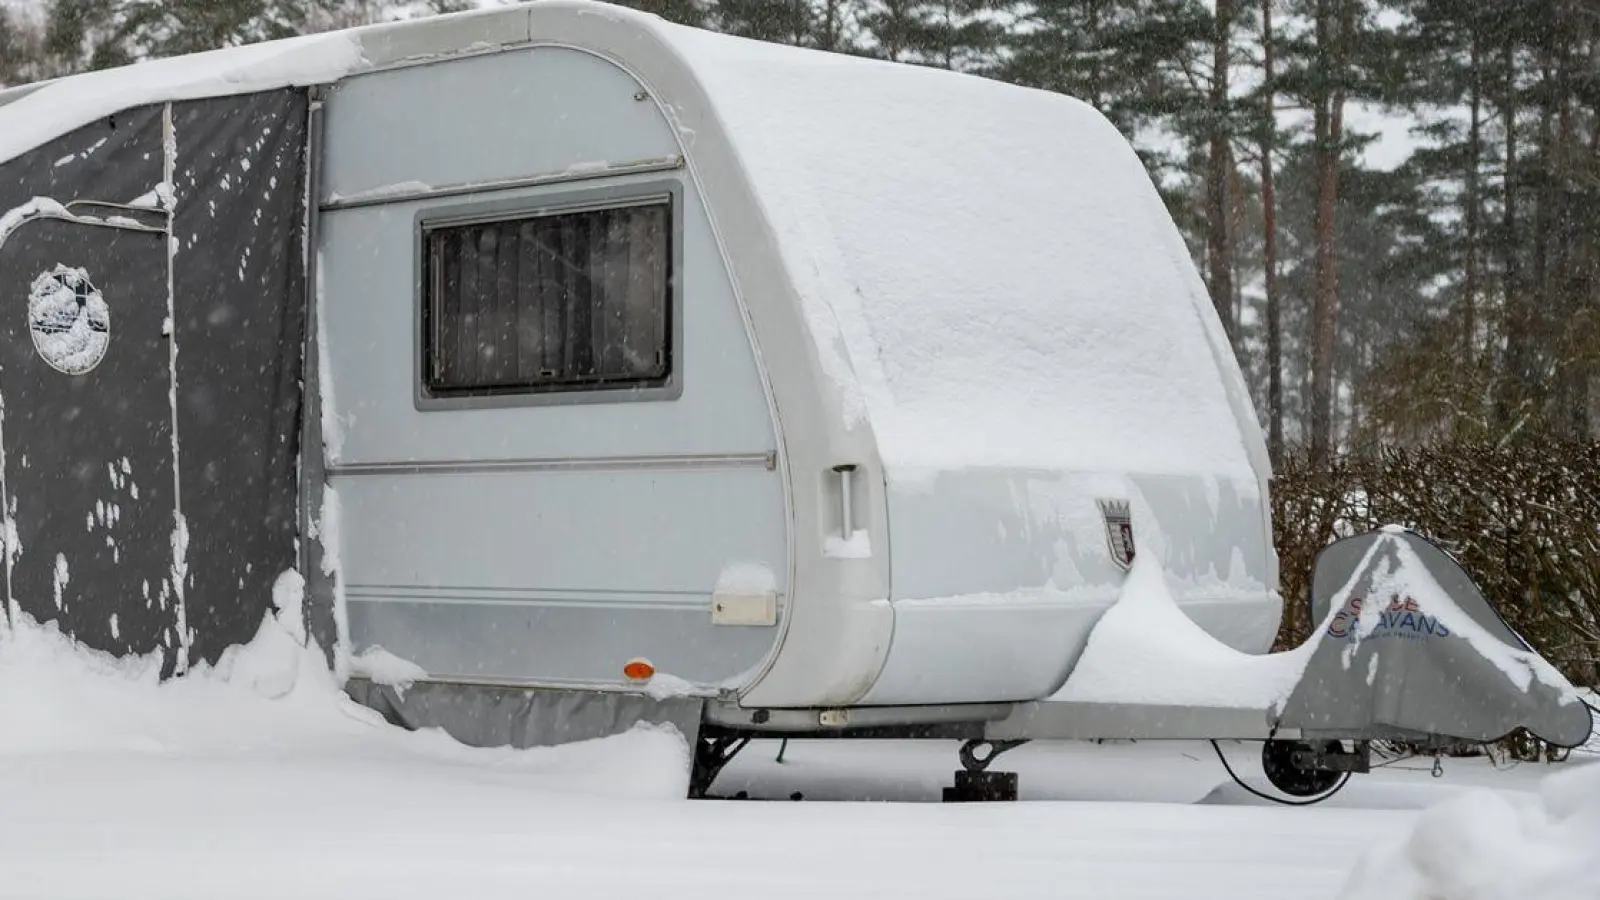 Wer seinen Wohnwagen im Winter nicht nutzt, sollte ihn vorher gründlich auf die Ruhepause vorbereiten. (Foto: Philipp Schulze/dpa/dpa-tmn)